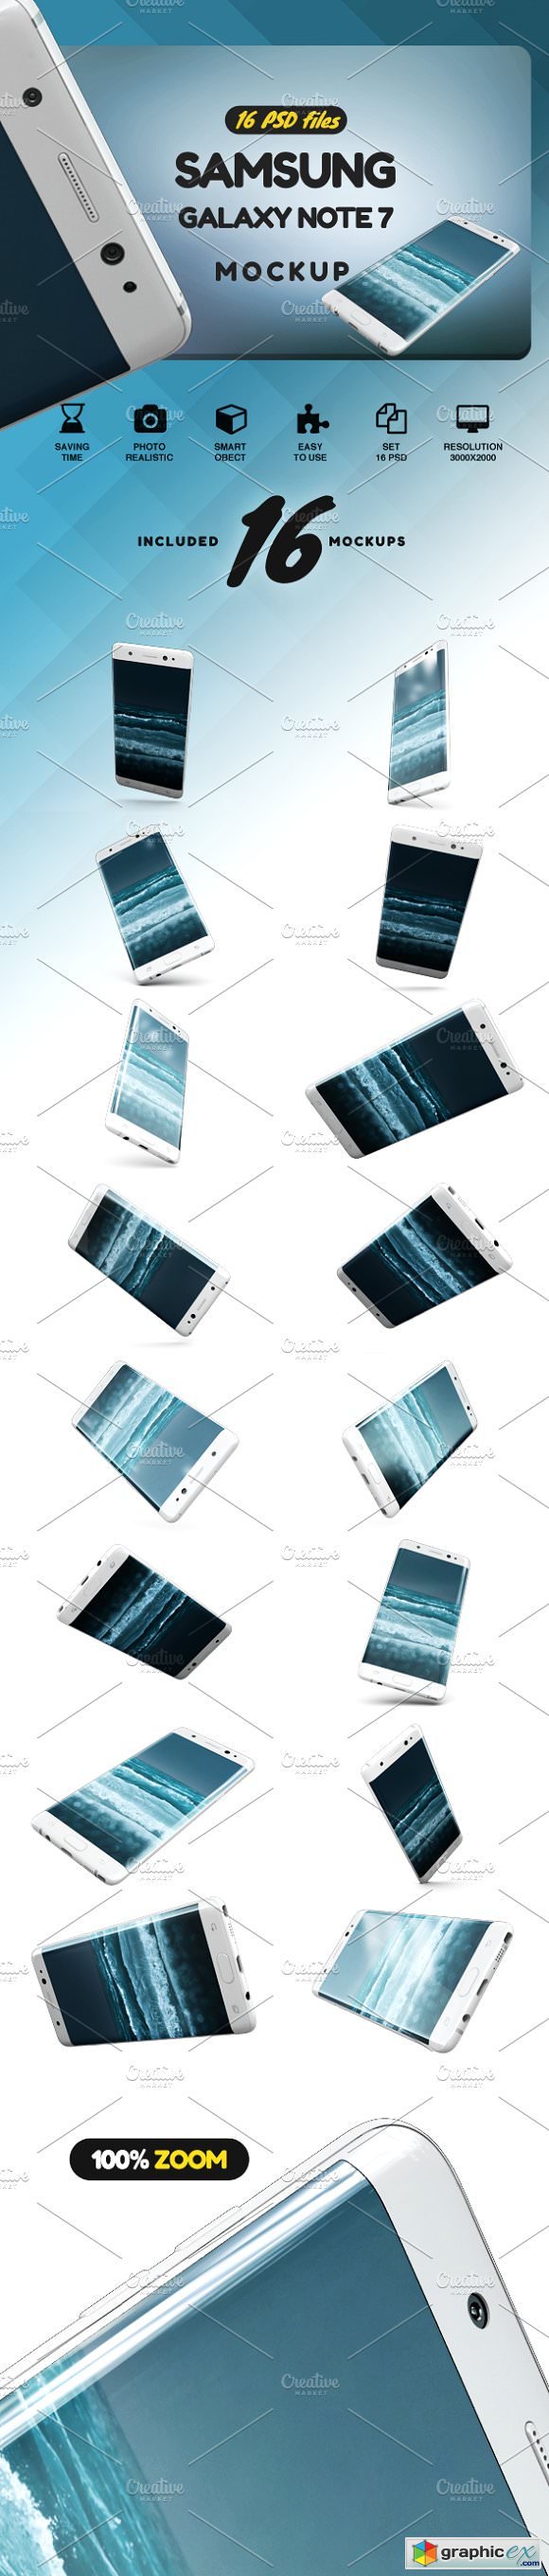 Samsung Galaxy Note 7 MockUp